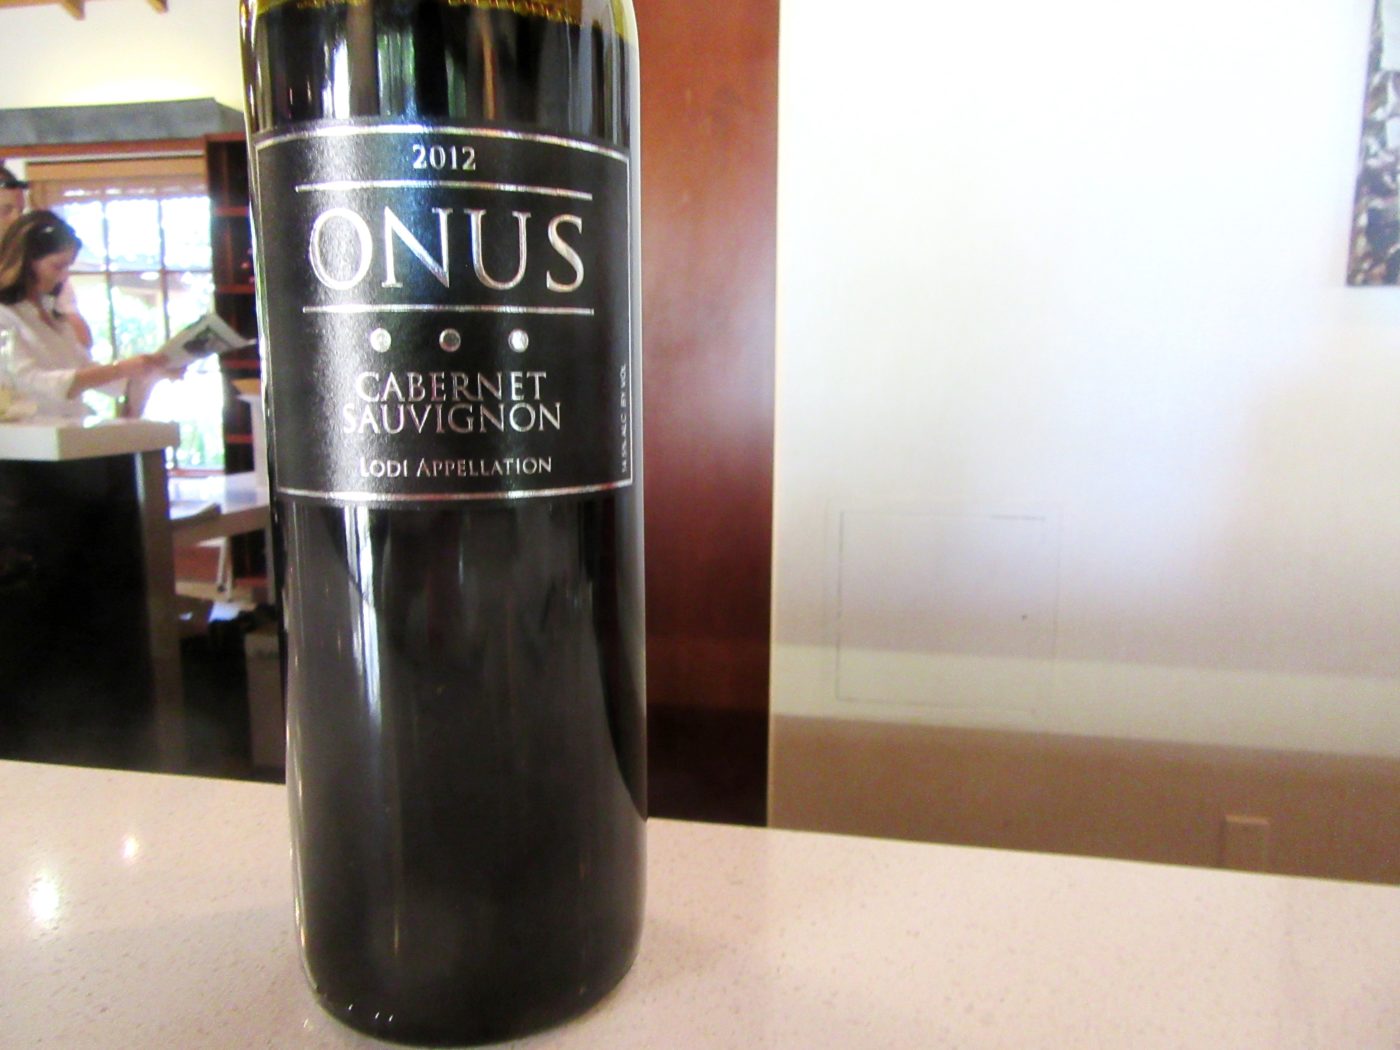 Onus, Cabernet Sauvignon 2012, Lodi, California, Wine Casual